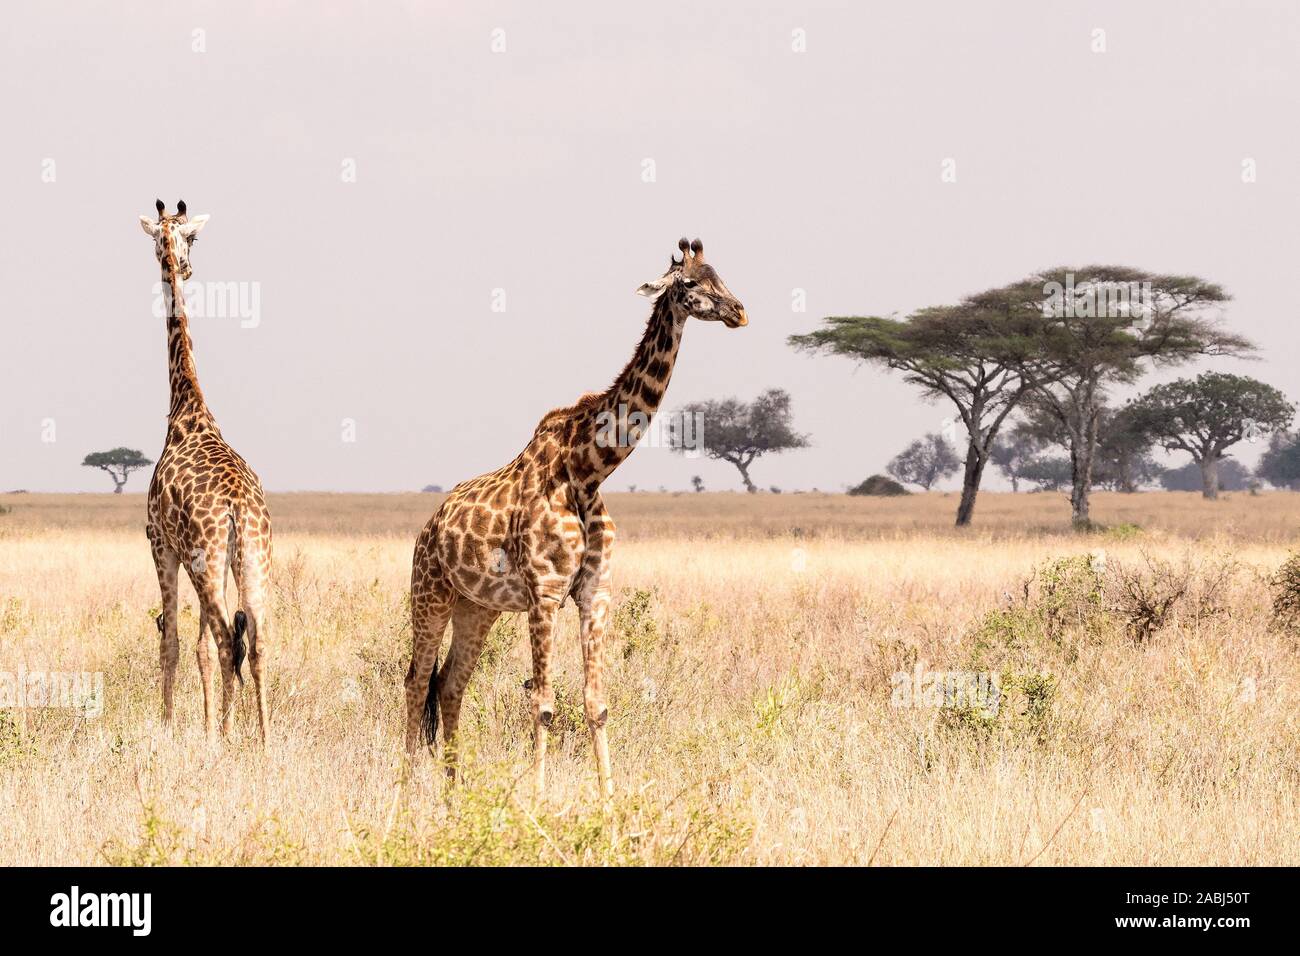 Masai giraffe Stock Photo